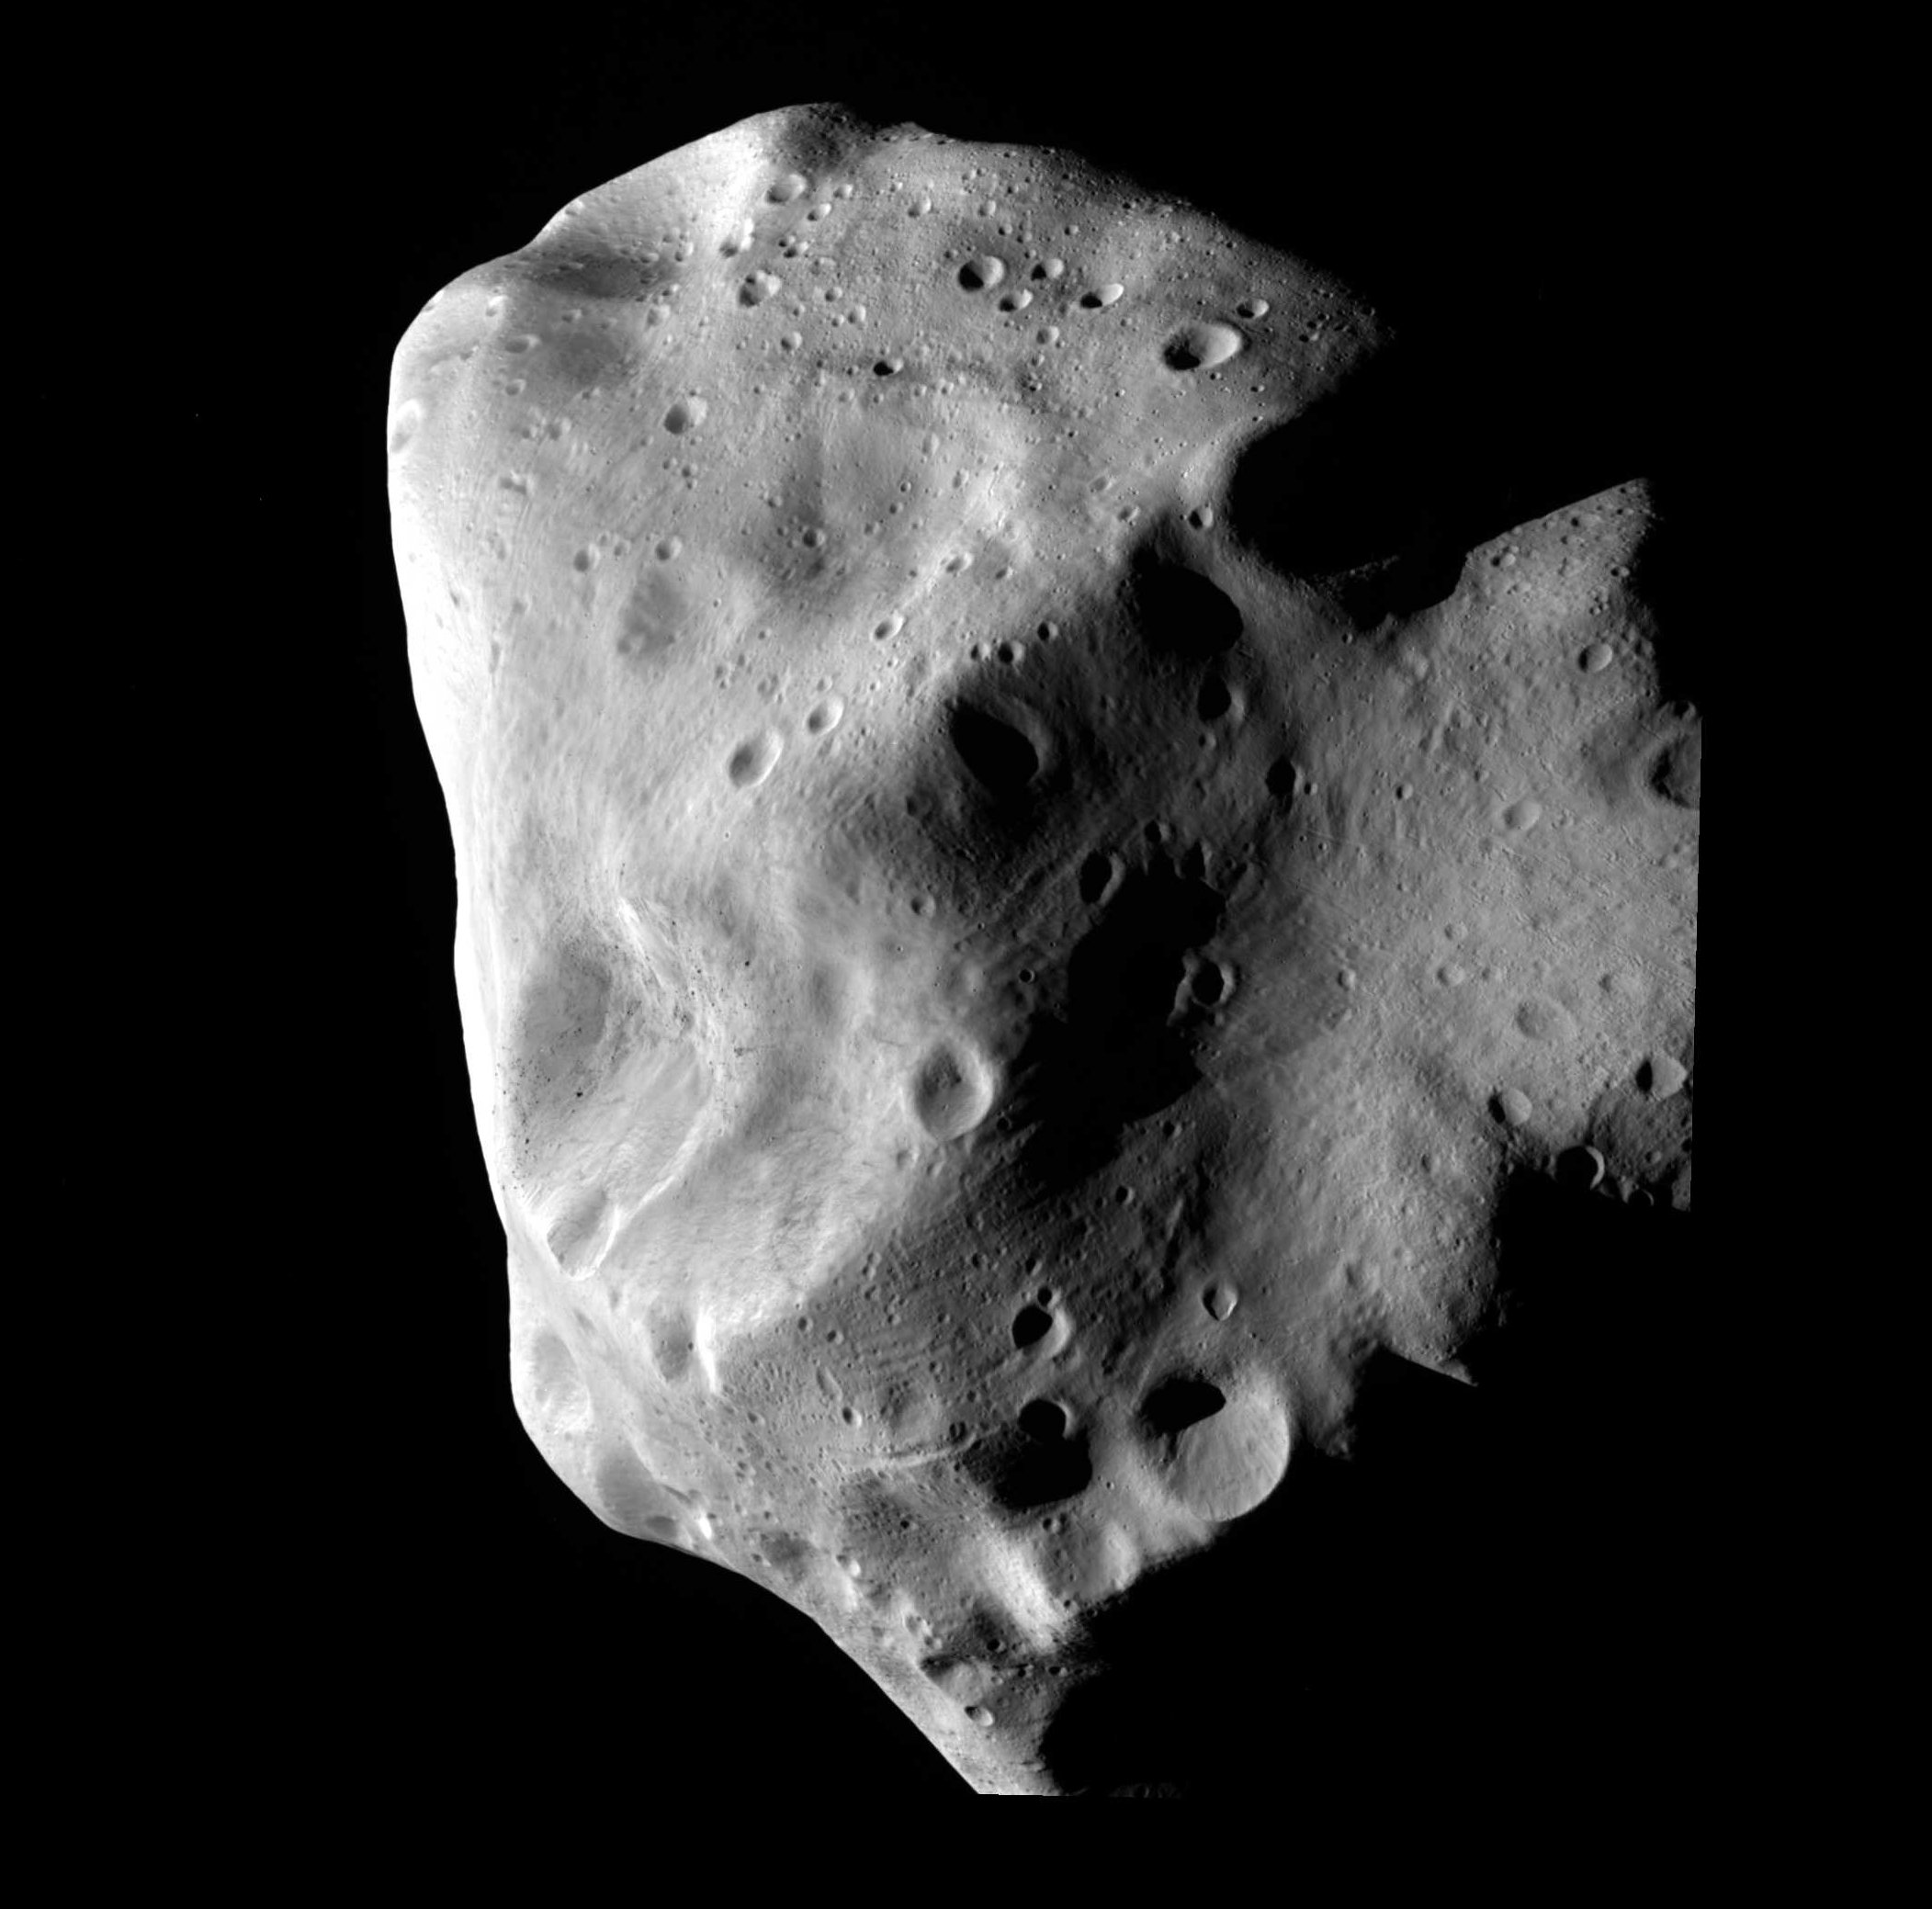 De asteroïde Lutetia, een van de asteroïden Gaia astrometrie is gebruikt om te onderzoeken, zoals gezien door de Rosetta-missie.